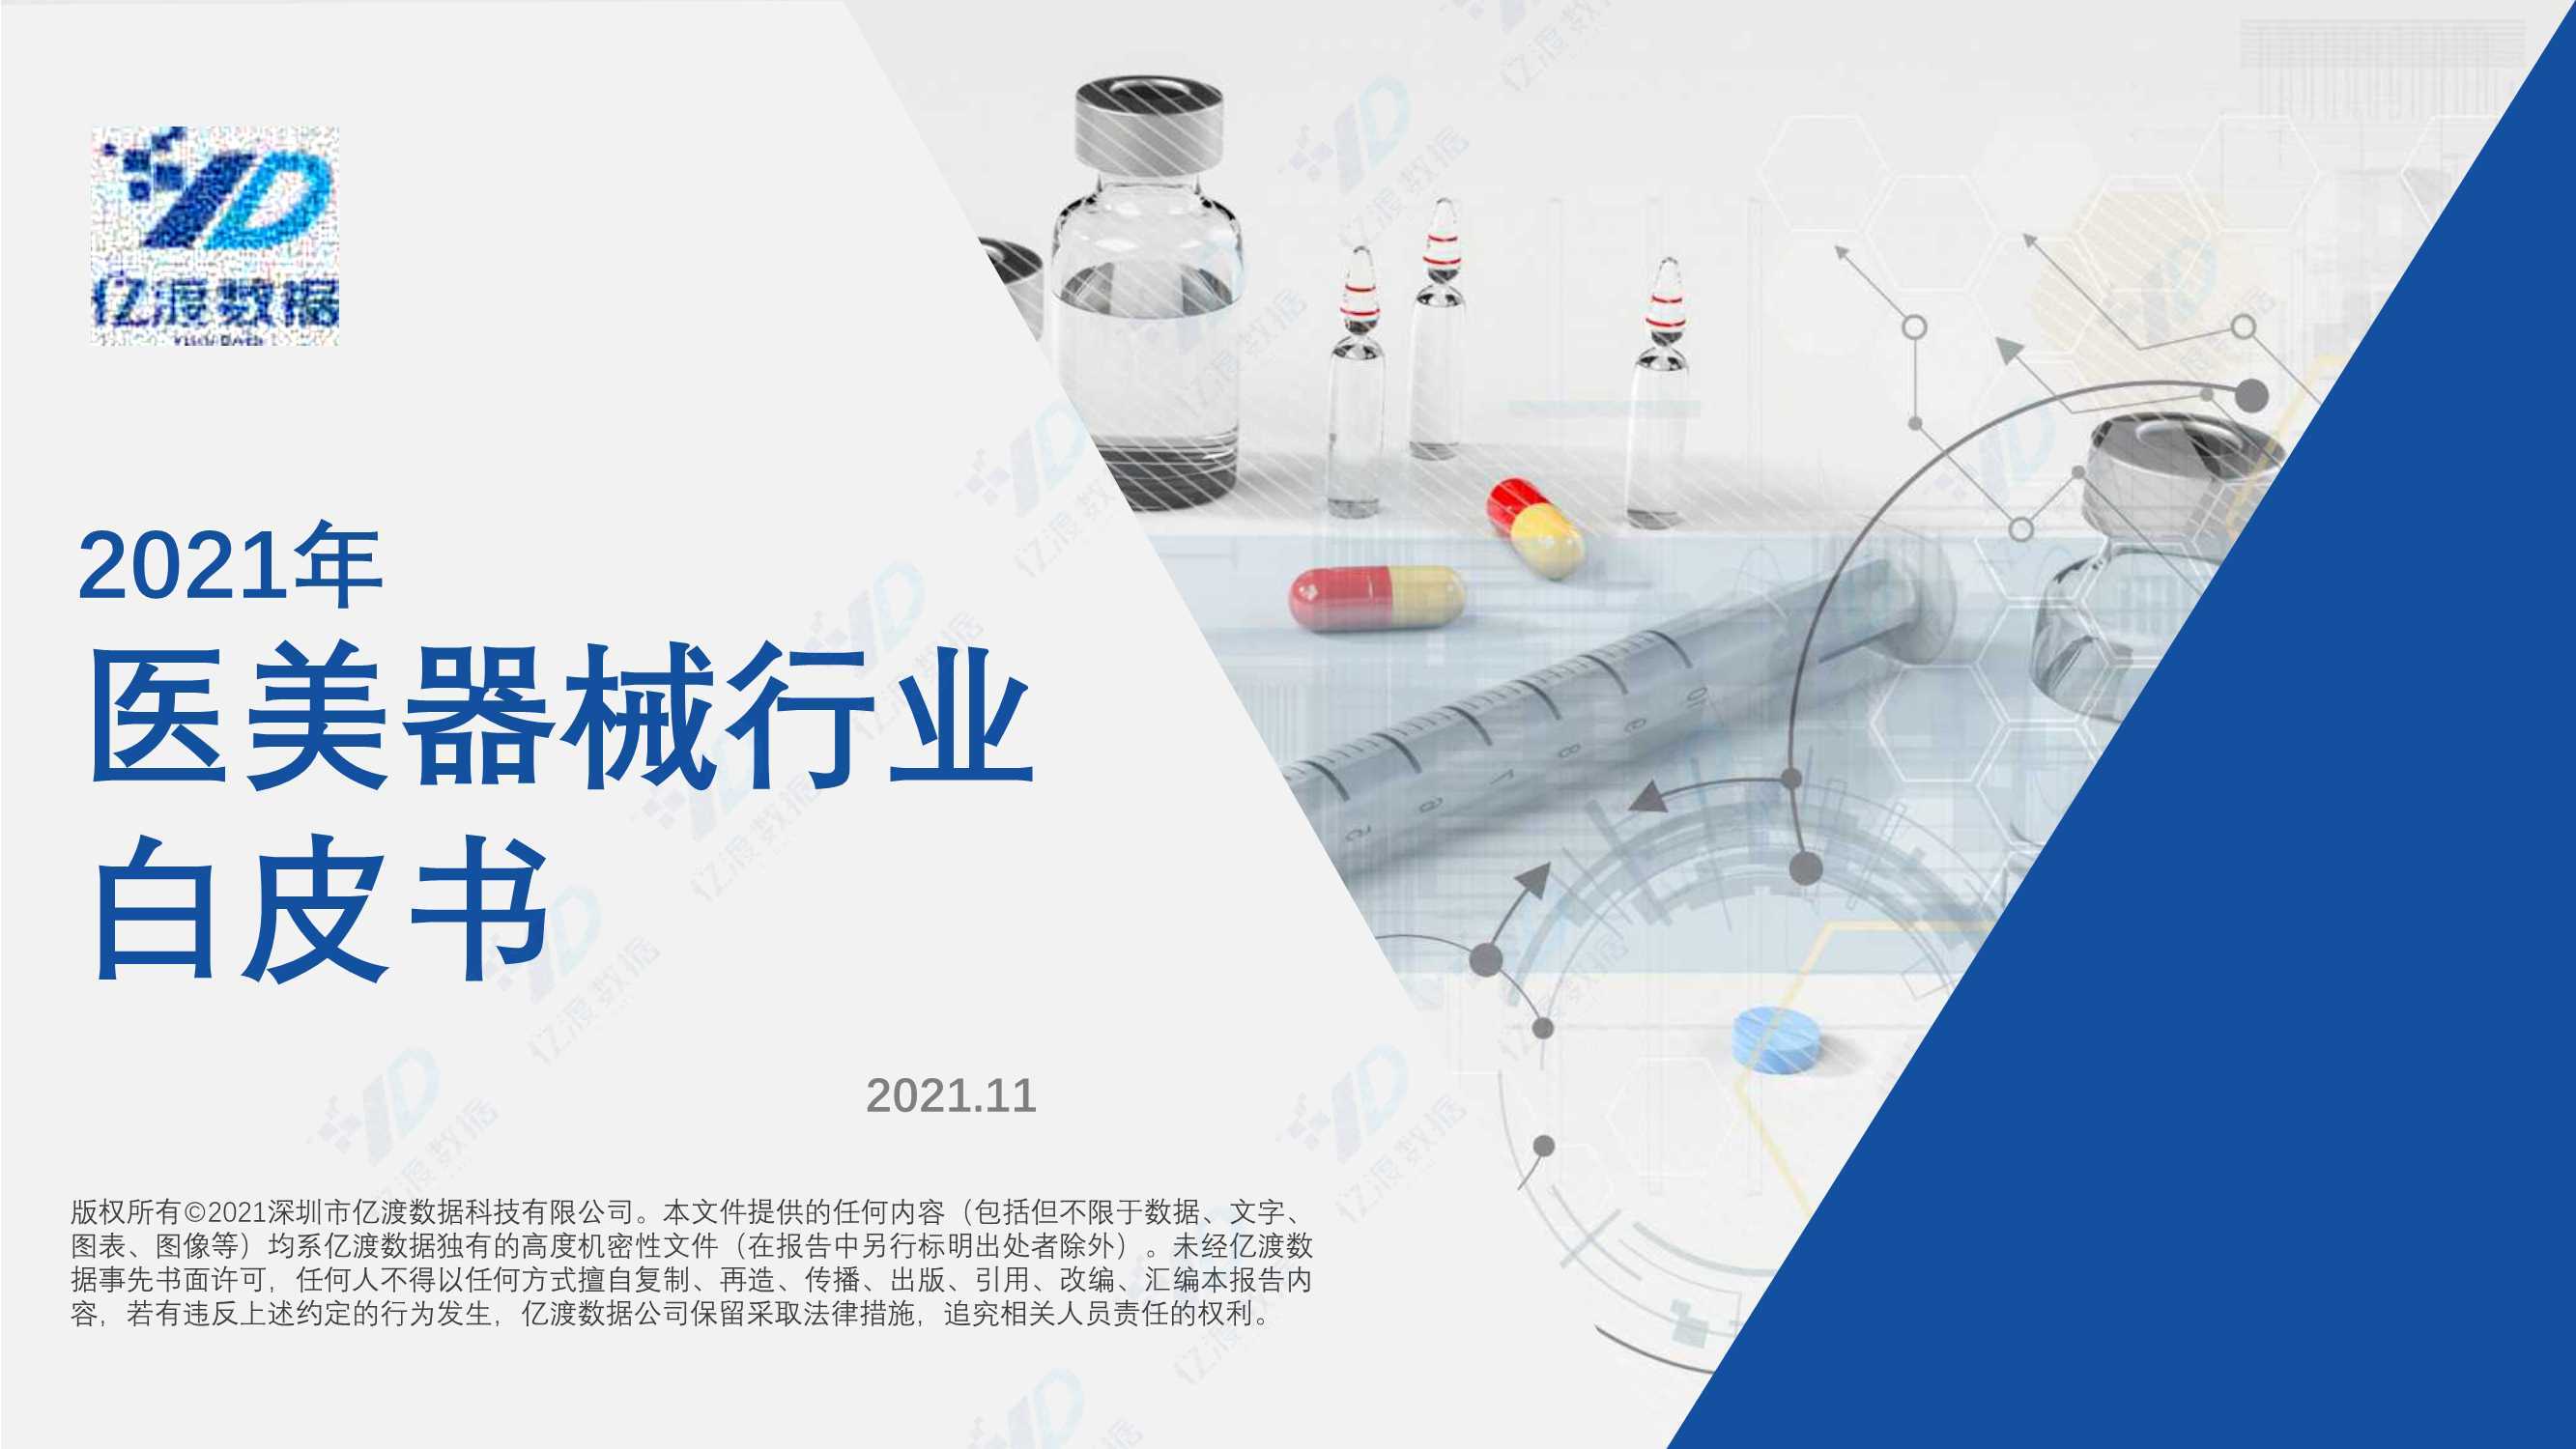 2021年中国医美器械行业白皮书